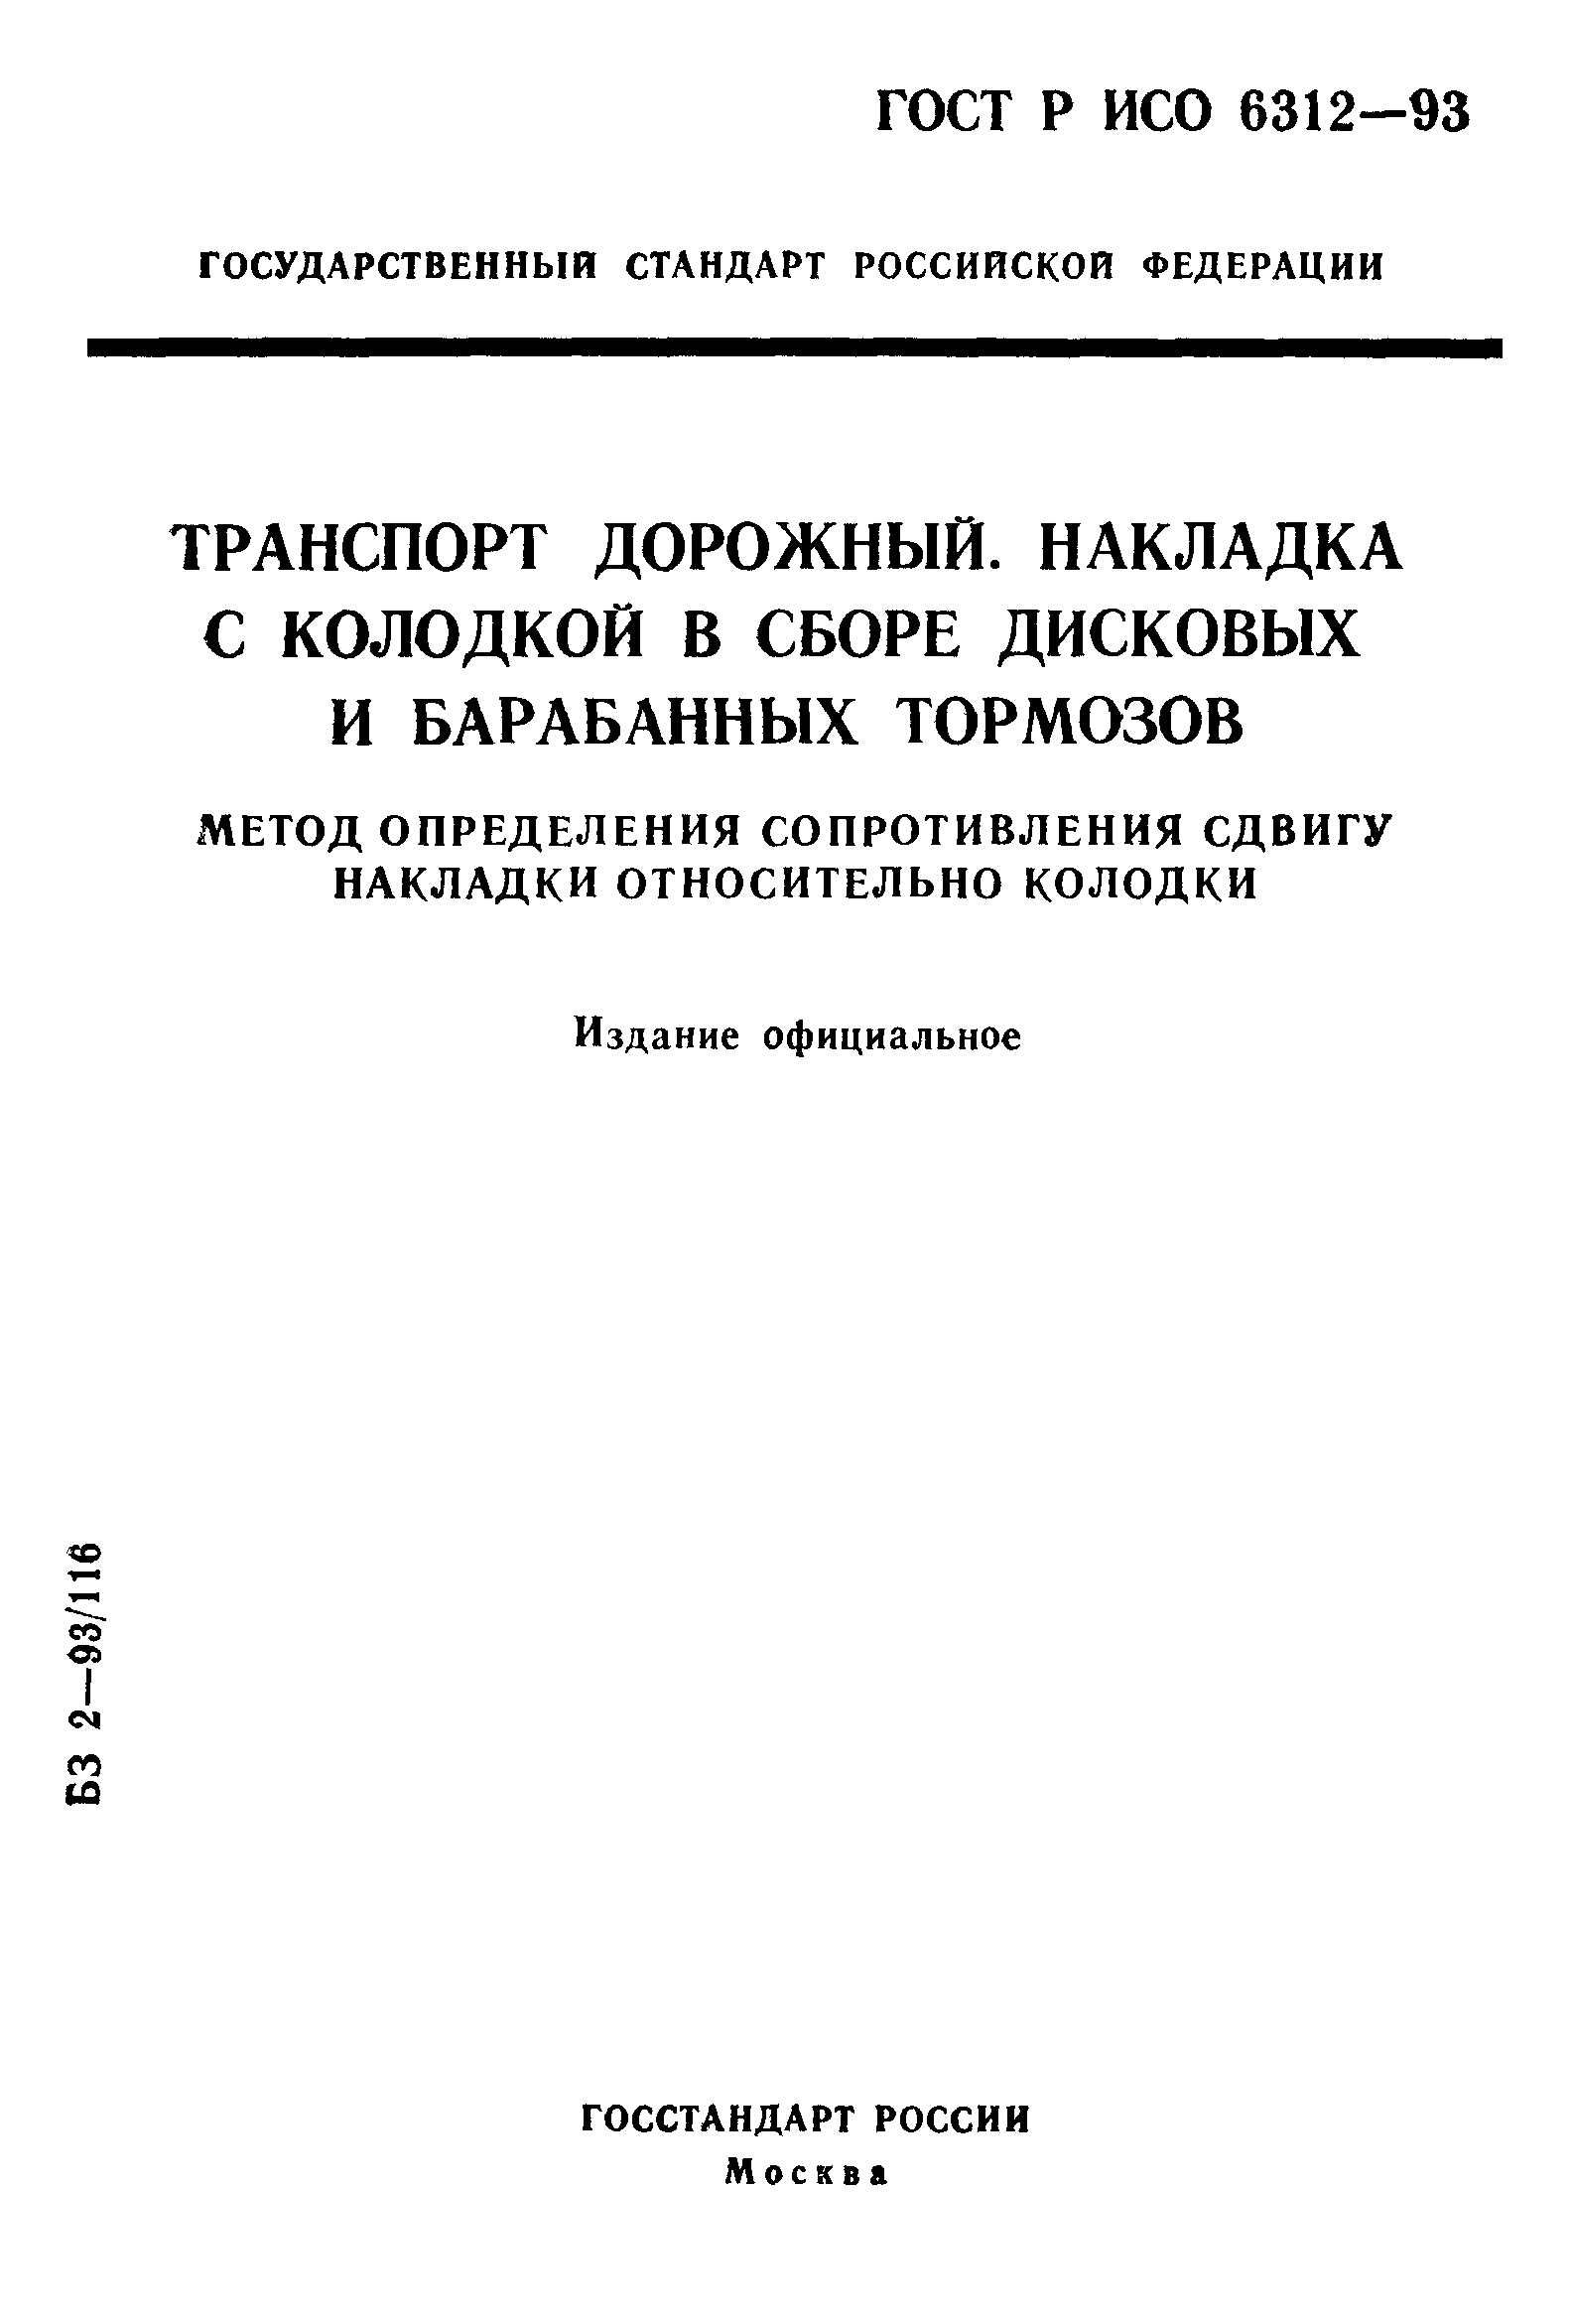 ГОСТ Р ИСО 6312-93